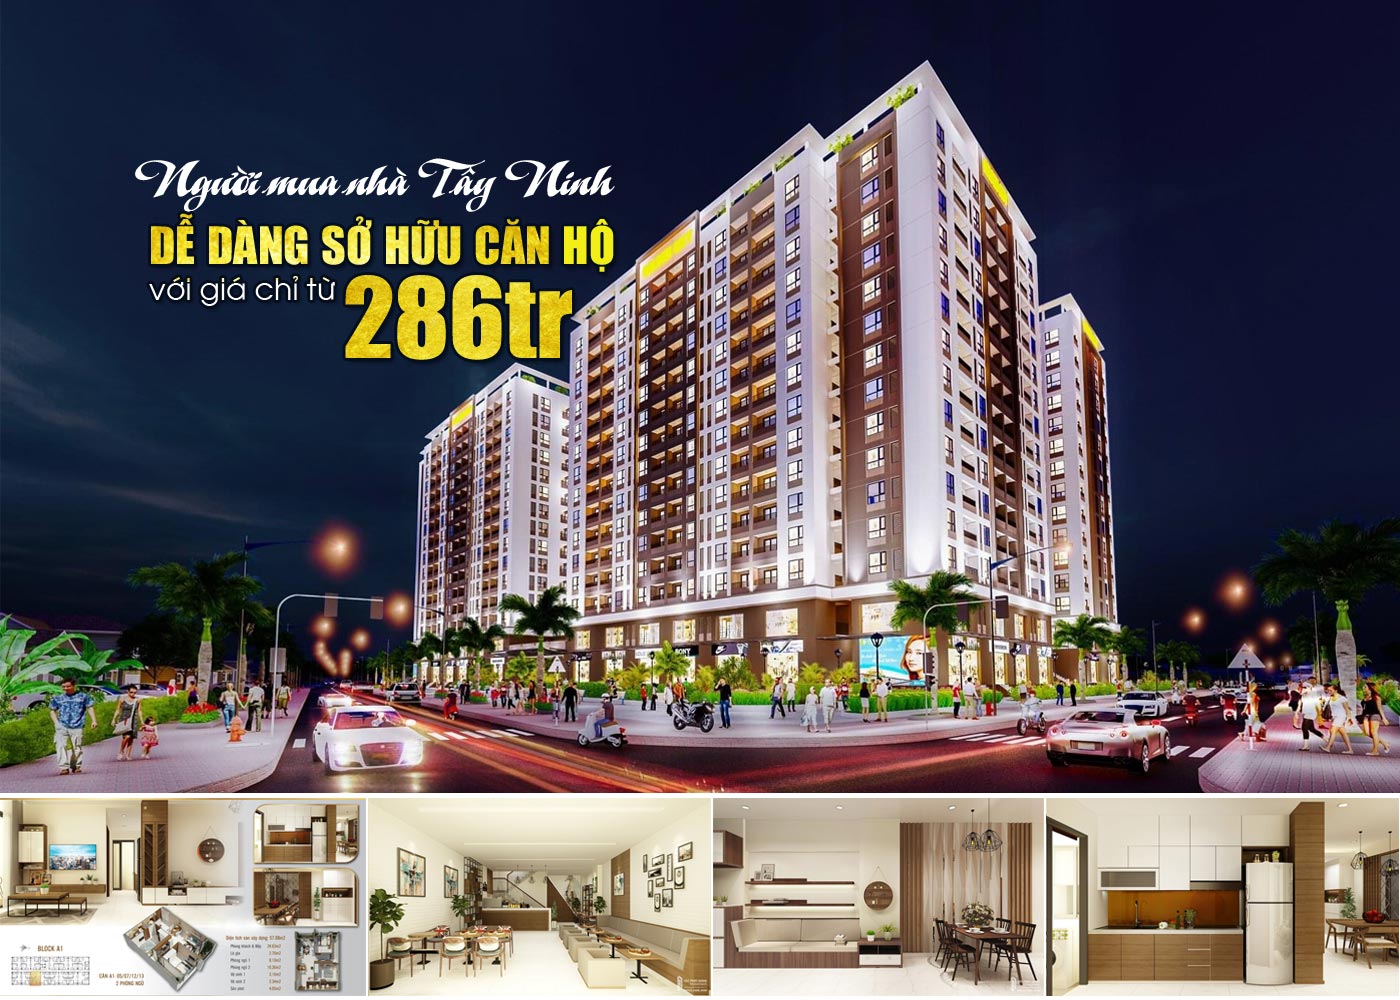 Người mua nhà Tây Ninh dễ dàng sở hữu căn hộ với giá chỉ từ 286tr - Ảnh 1